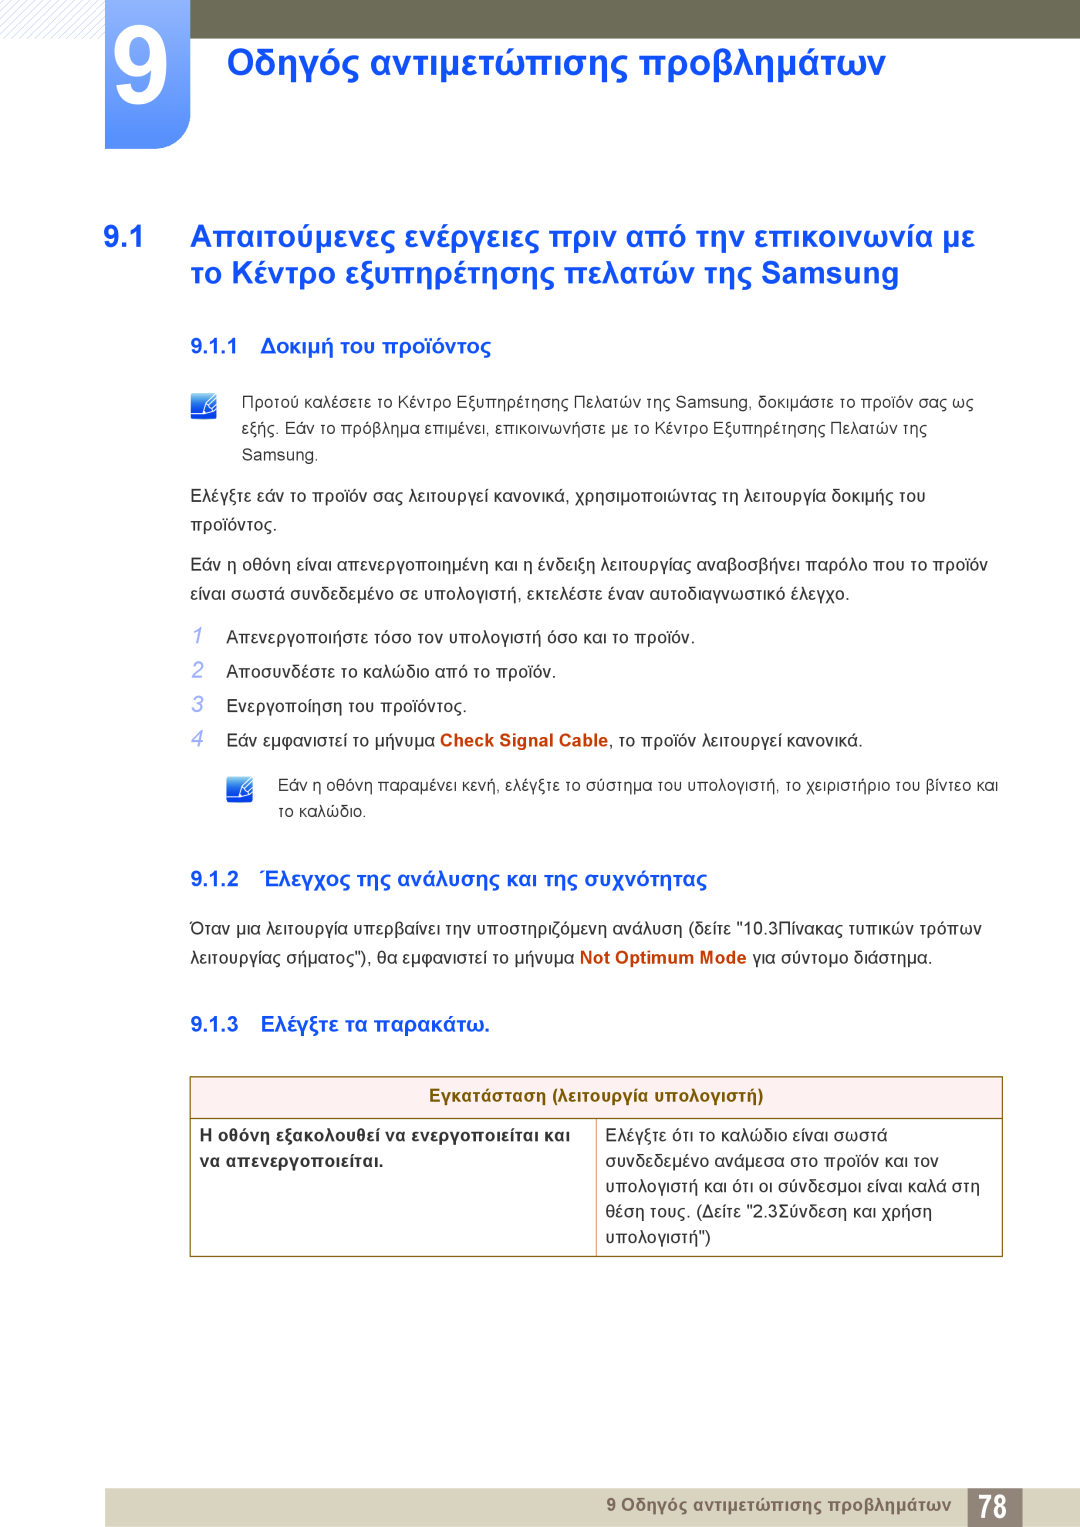 Samsung LS19C45KBR/EN manual 9 Οδηγός αντιμετώπισης προβλημάτων, 9.1.1 Δοκιμή του προϊόντος, 9.1.3 Ελέγξτε τα παρακάτω 